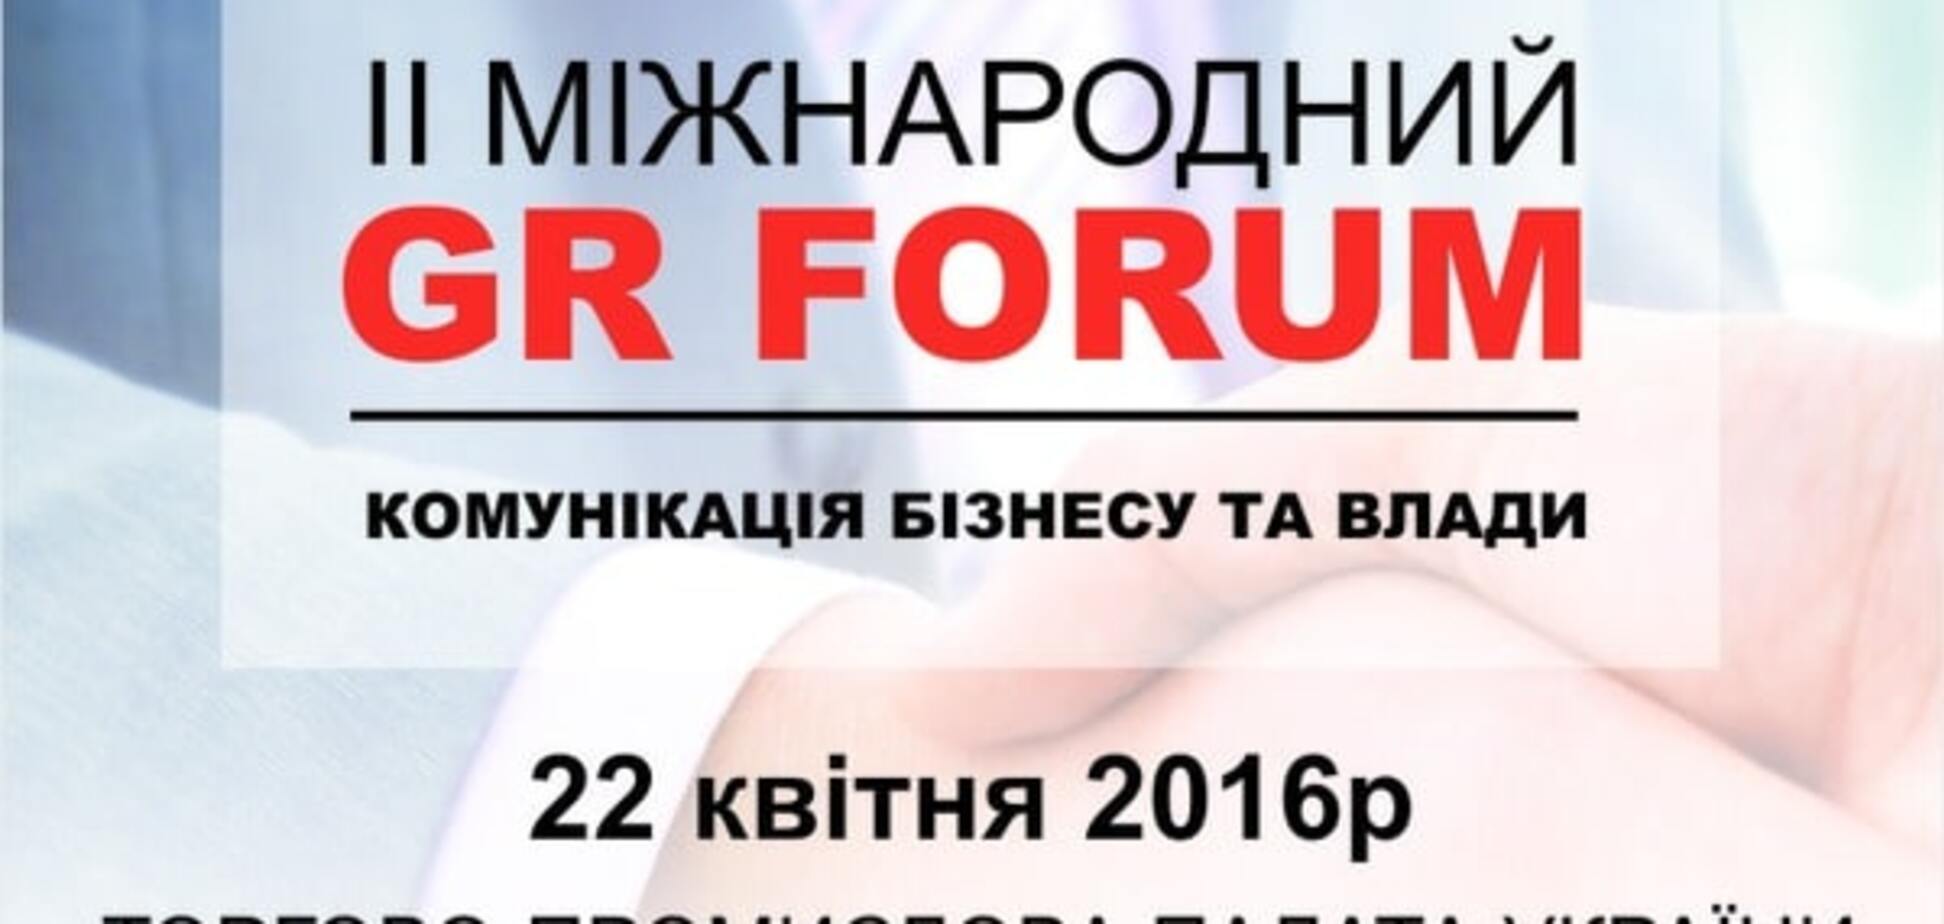 22 квітня в Києві відбудеться II Міжнародний GR форум